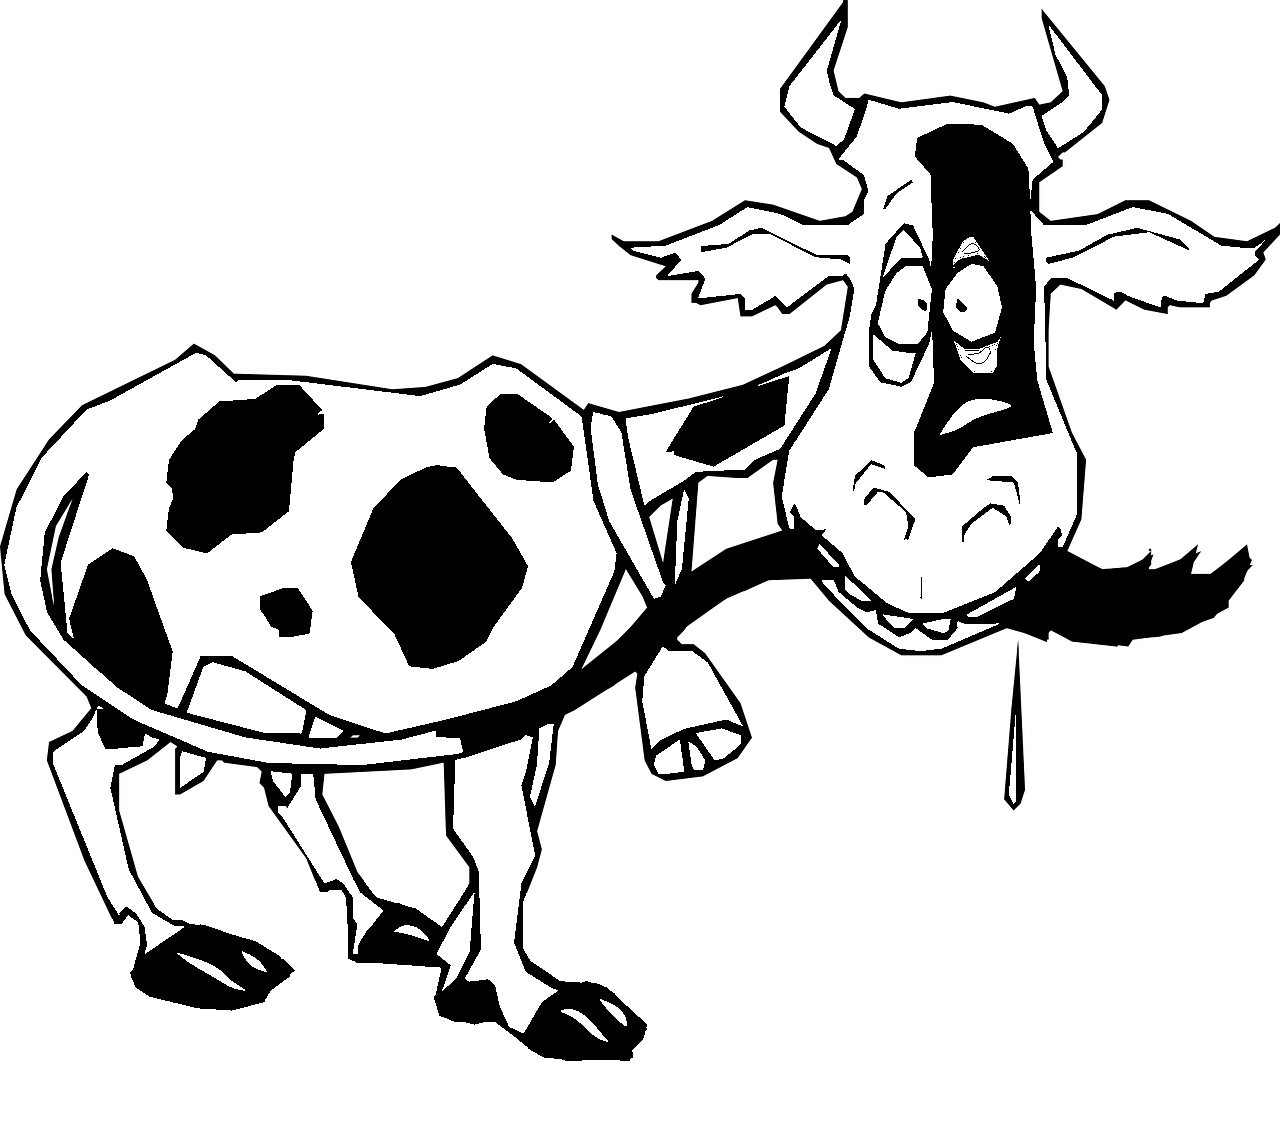 Målarbok av ko som biter svansen